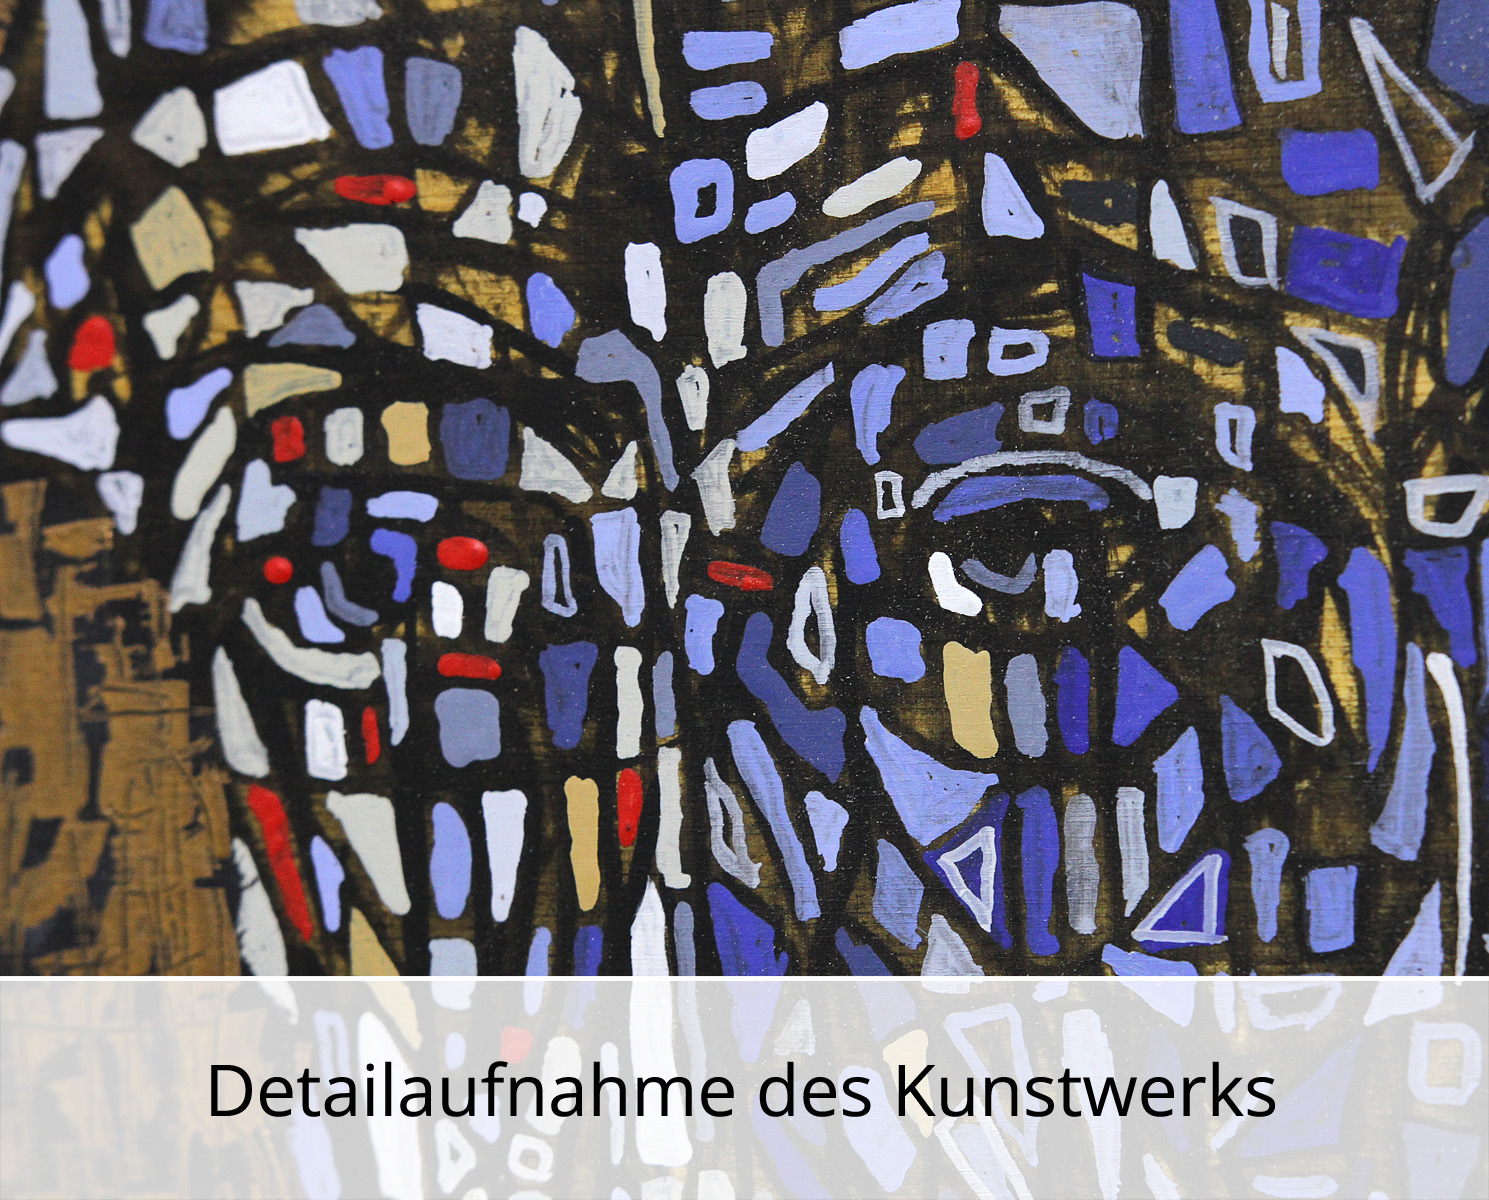 C. Blechschmidt: "Blaue Stunde", Original/Unikat, zeitgenössisches Ölgemälde